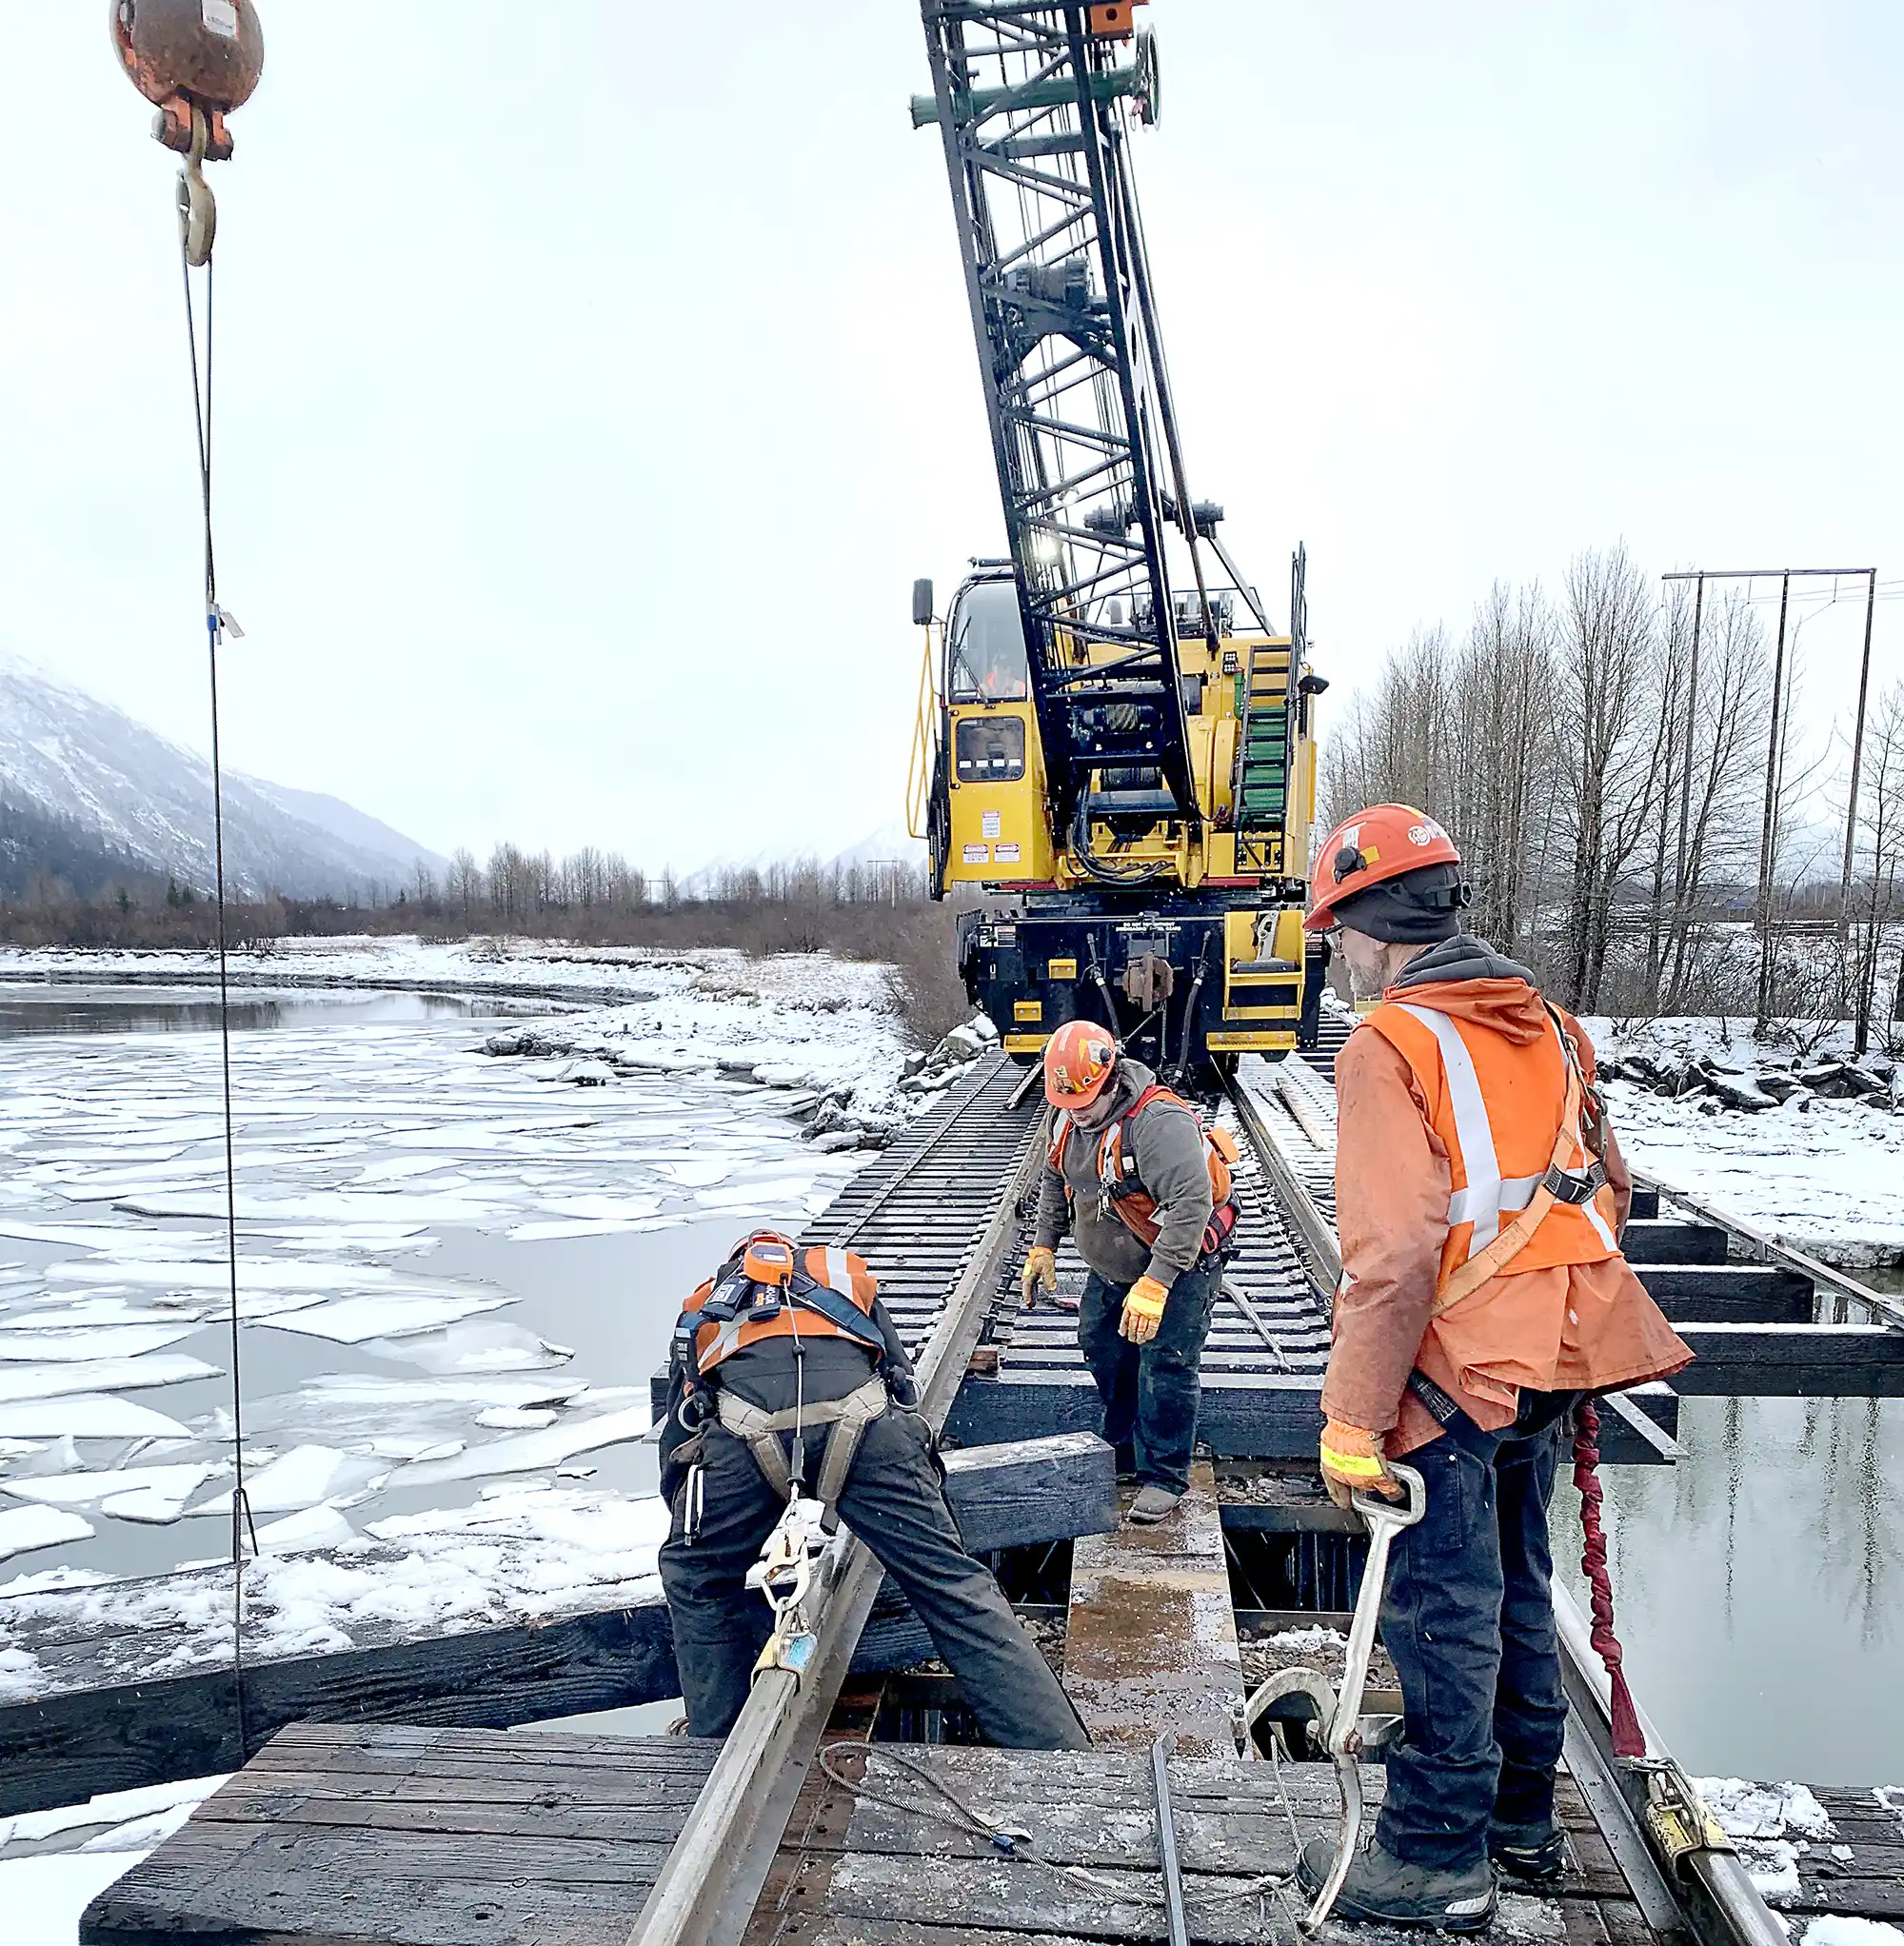 Workers replacing wood crossbeams on a bridge